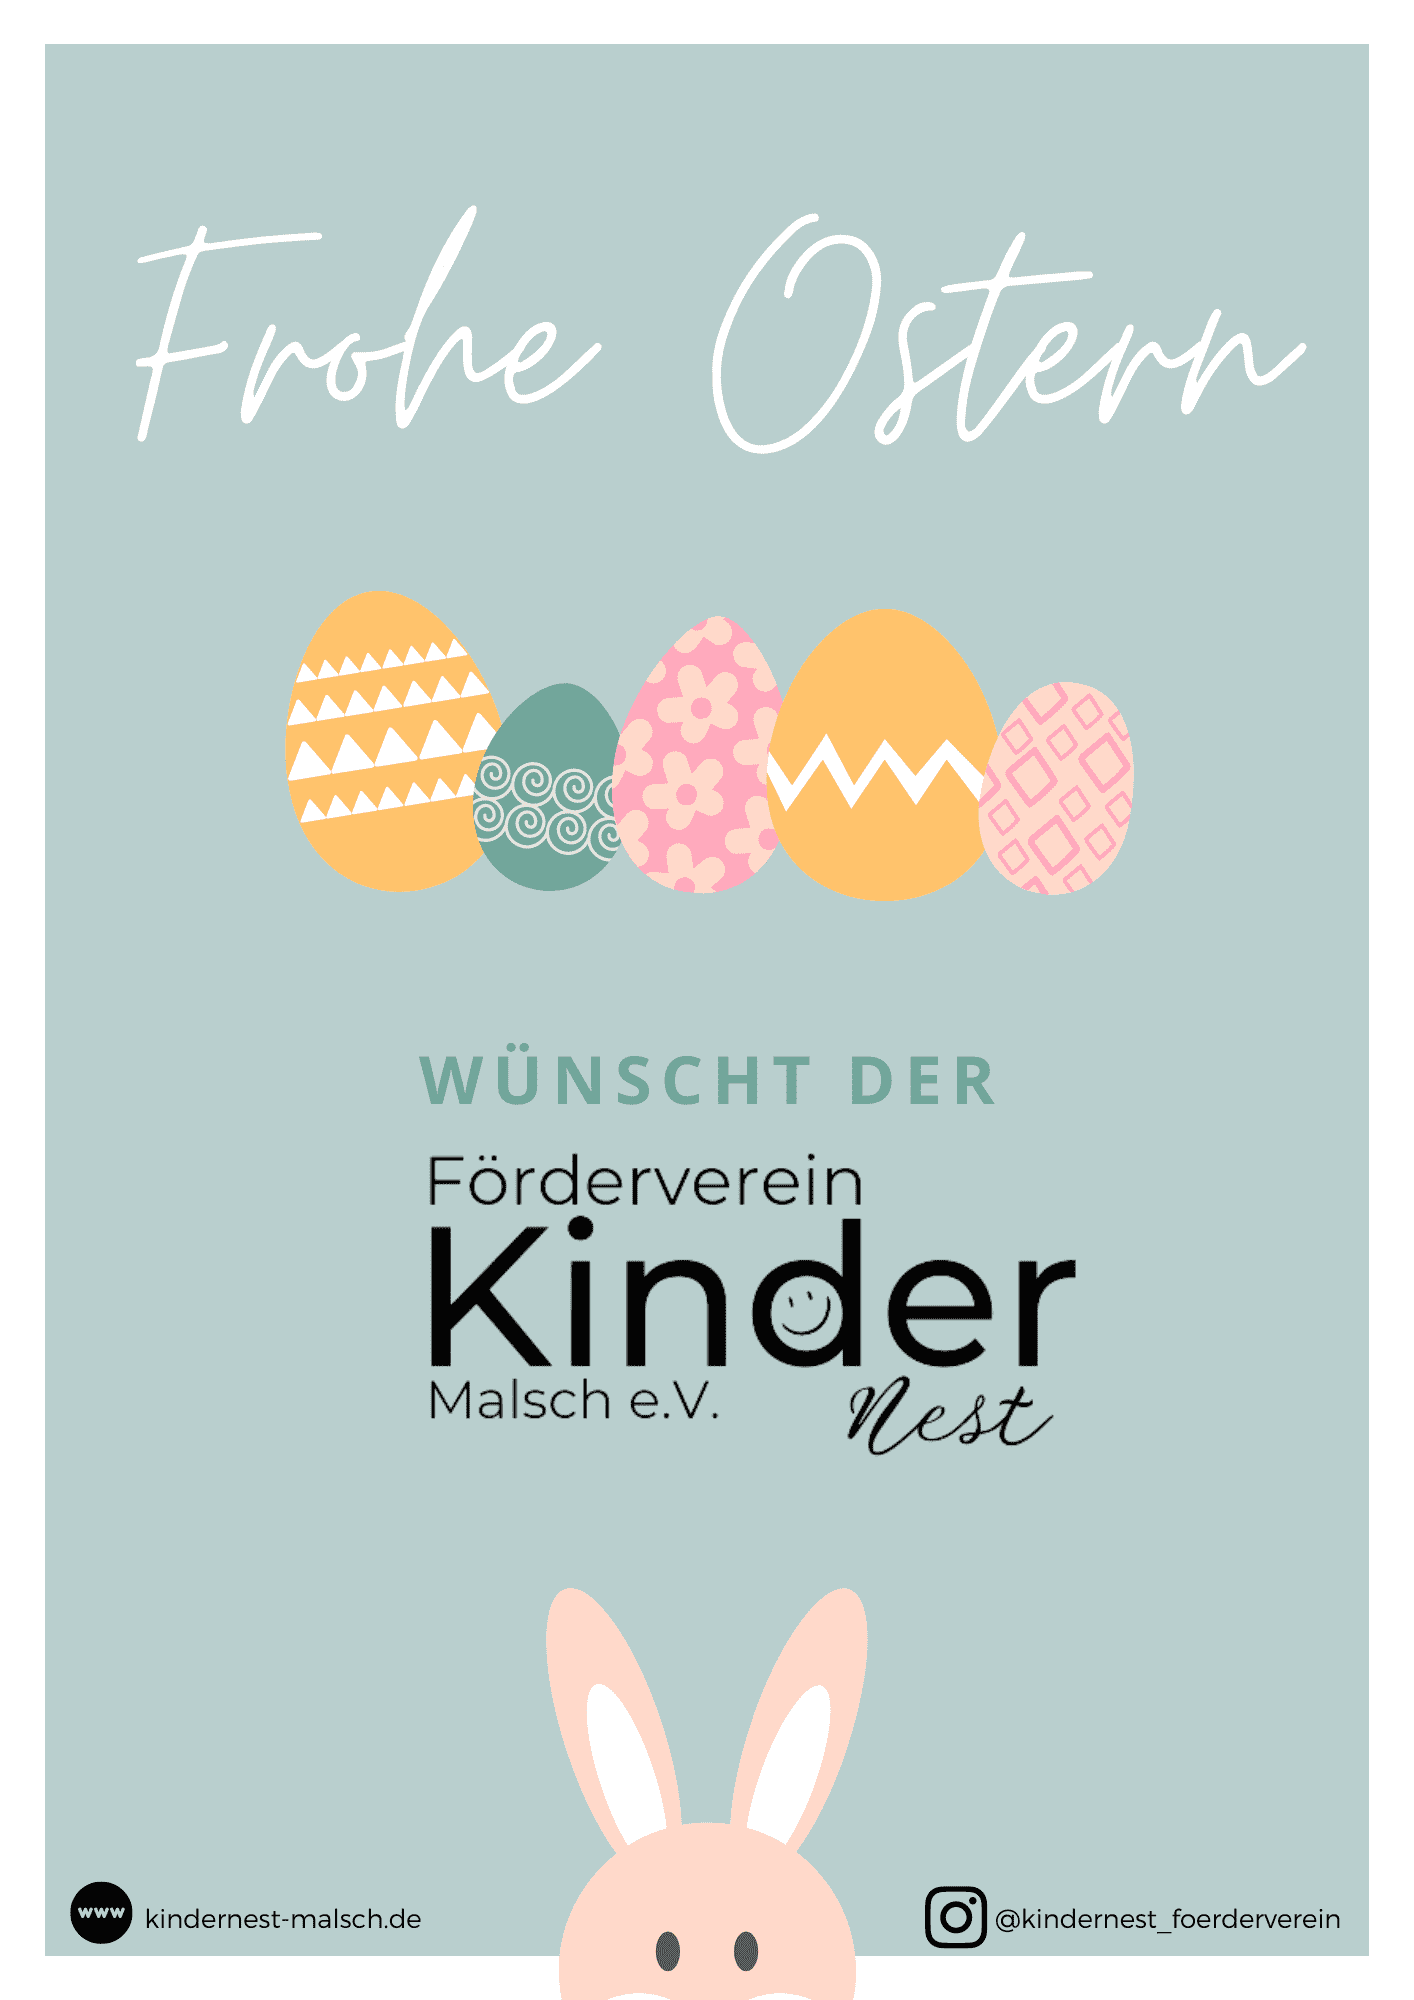 Wir wünschen Euch ein schönes Osterfest!